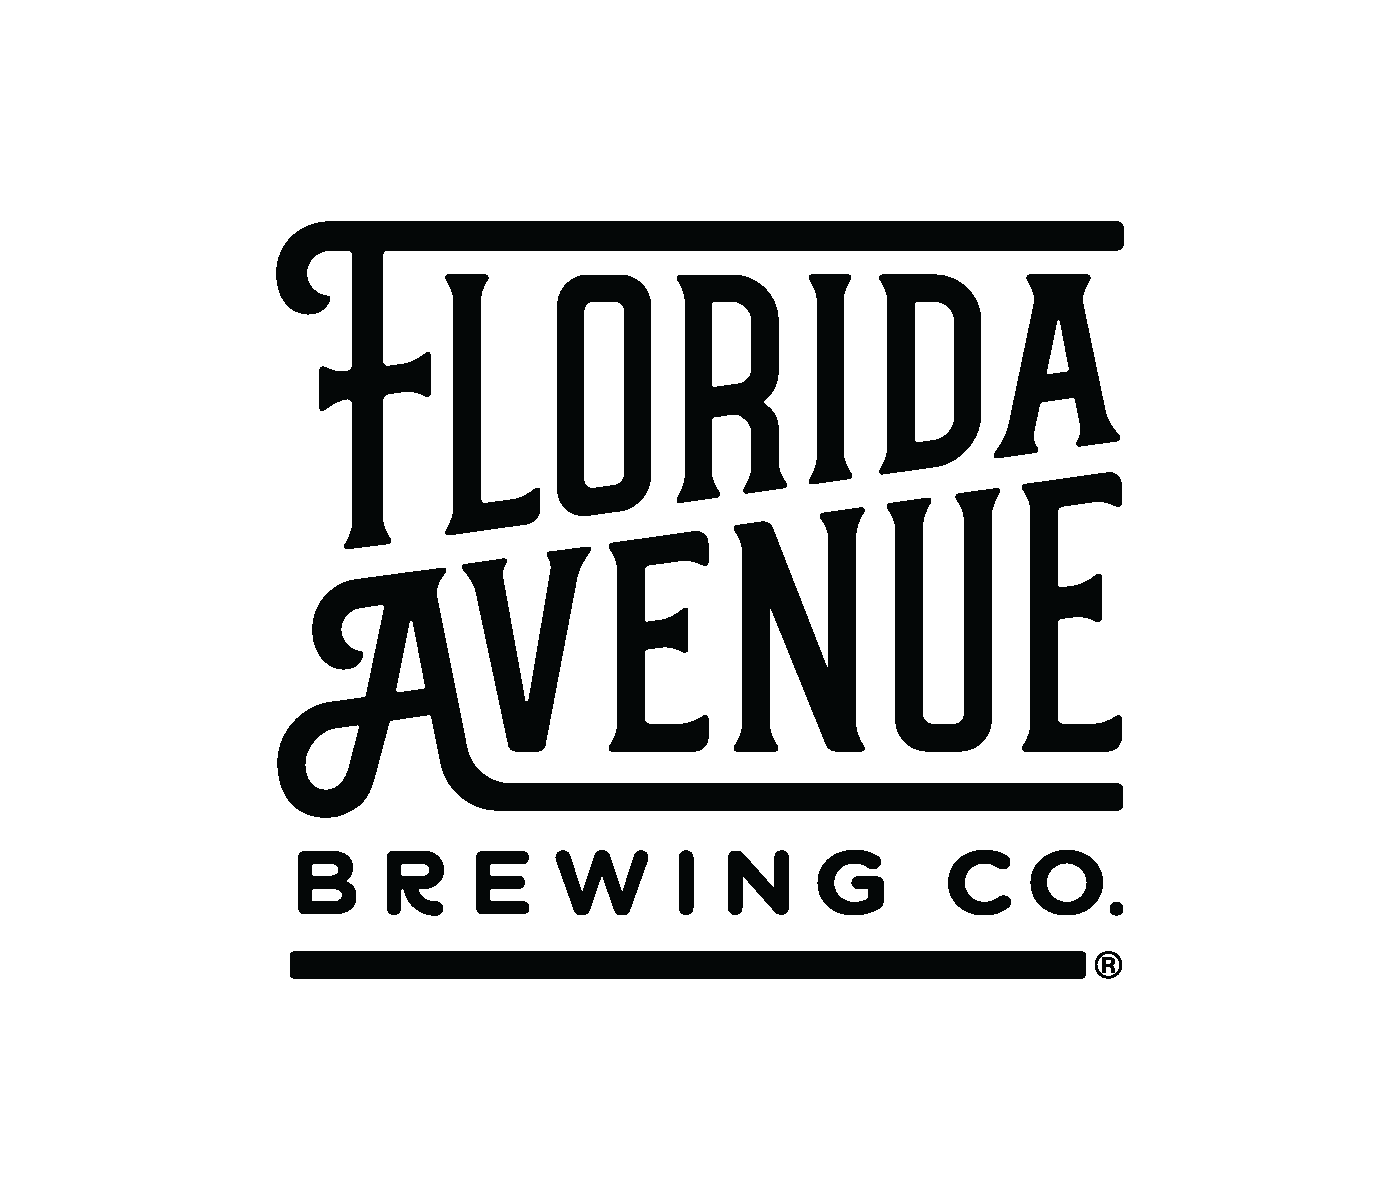 Florida Avenue Brewing